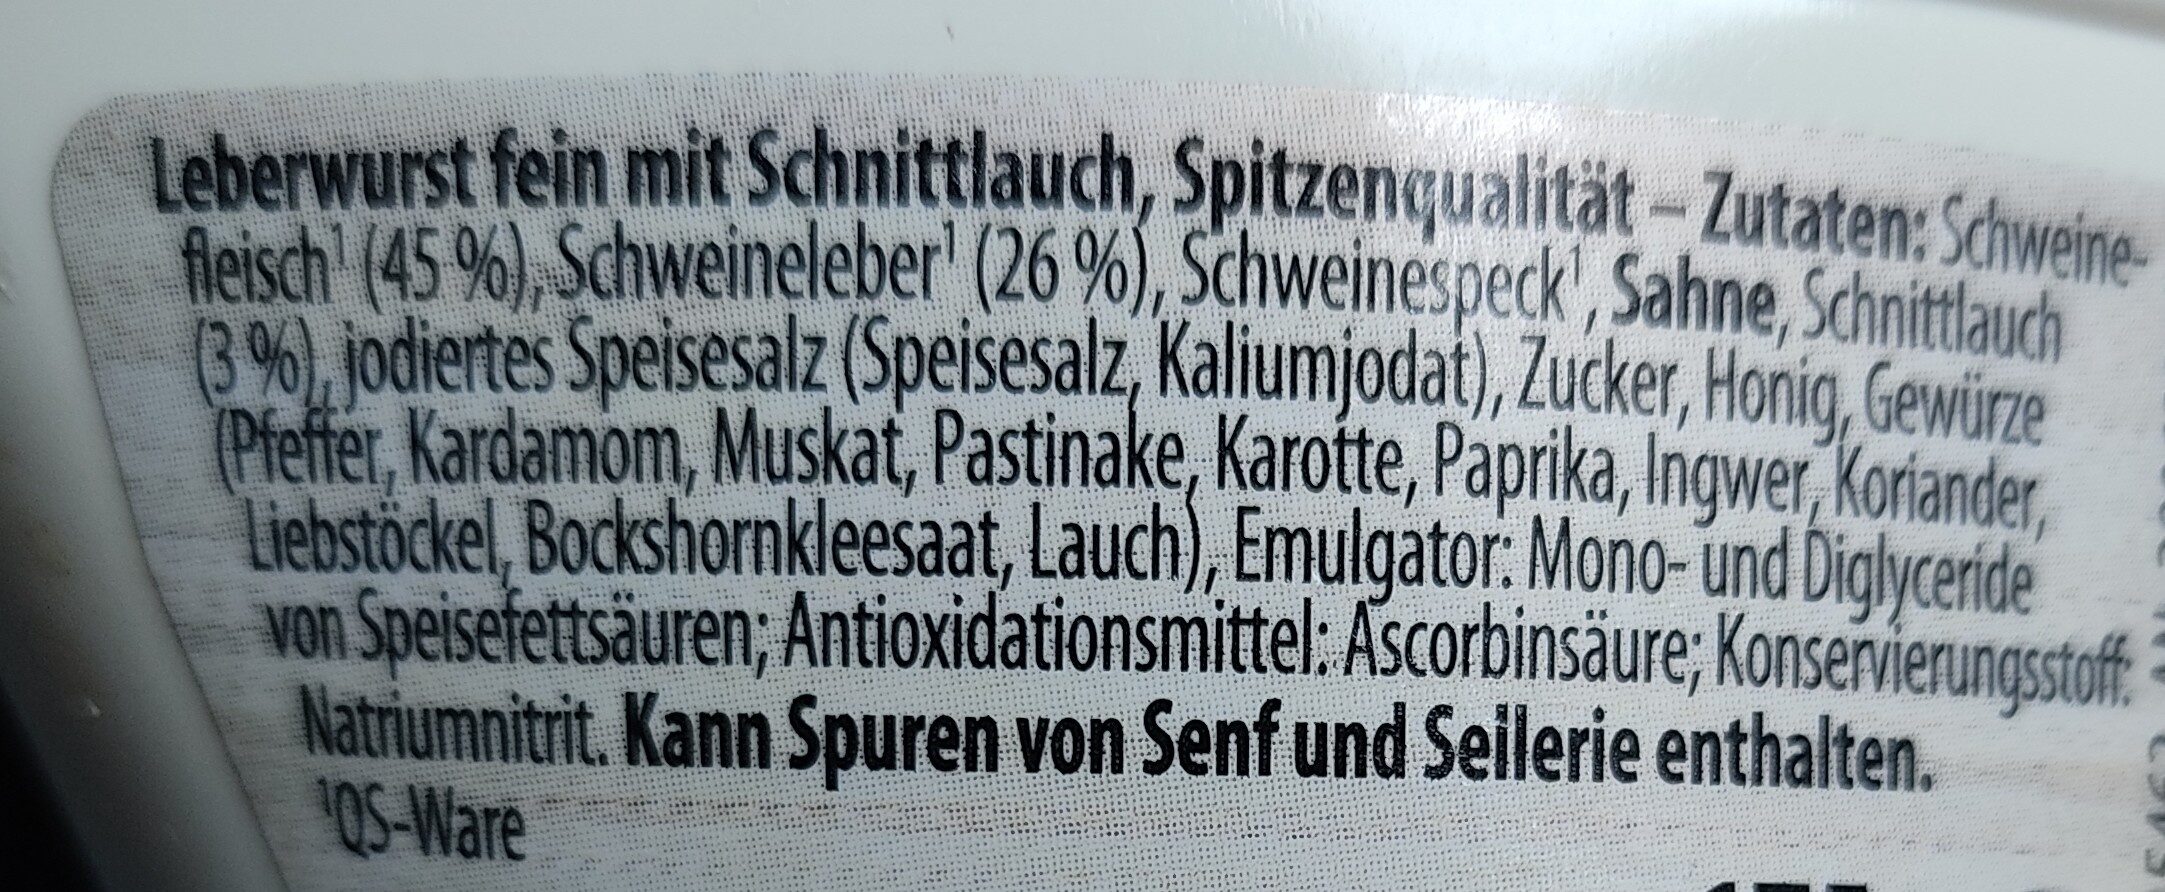 Leberwurst fein mit Schnittlauch - Ingredientes - de